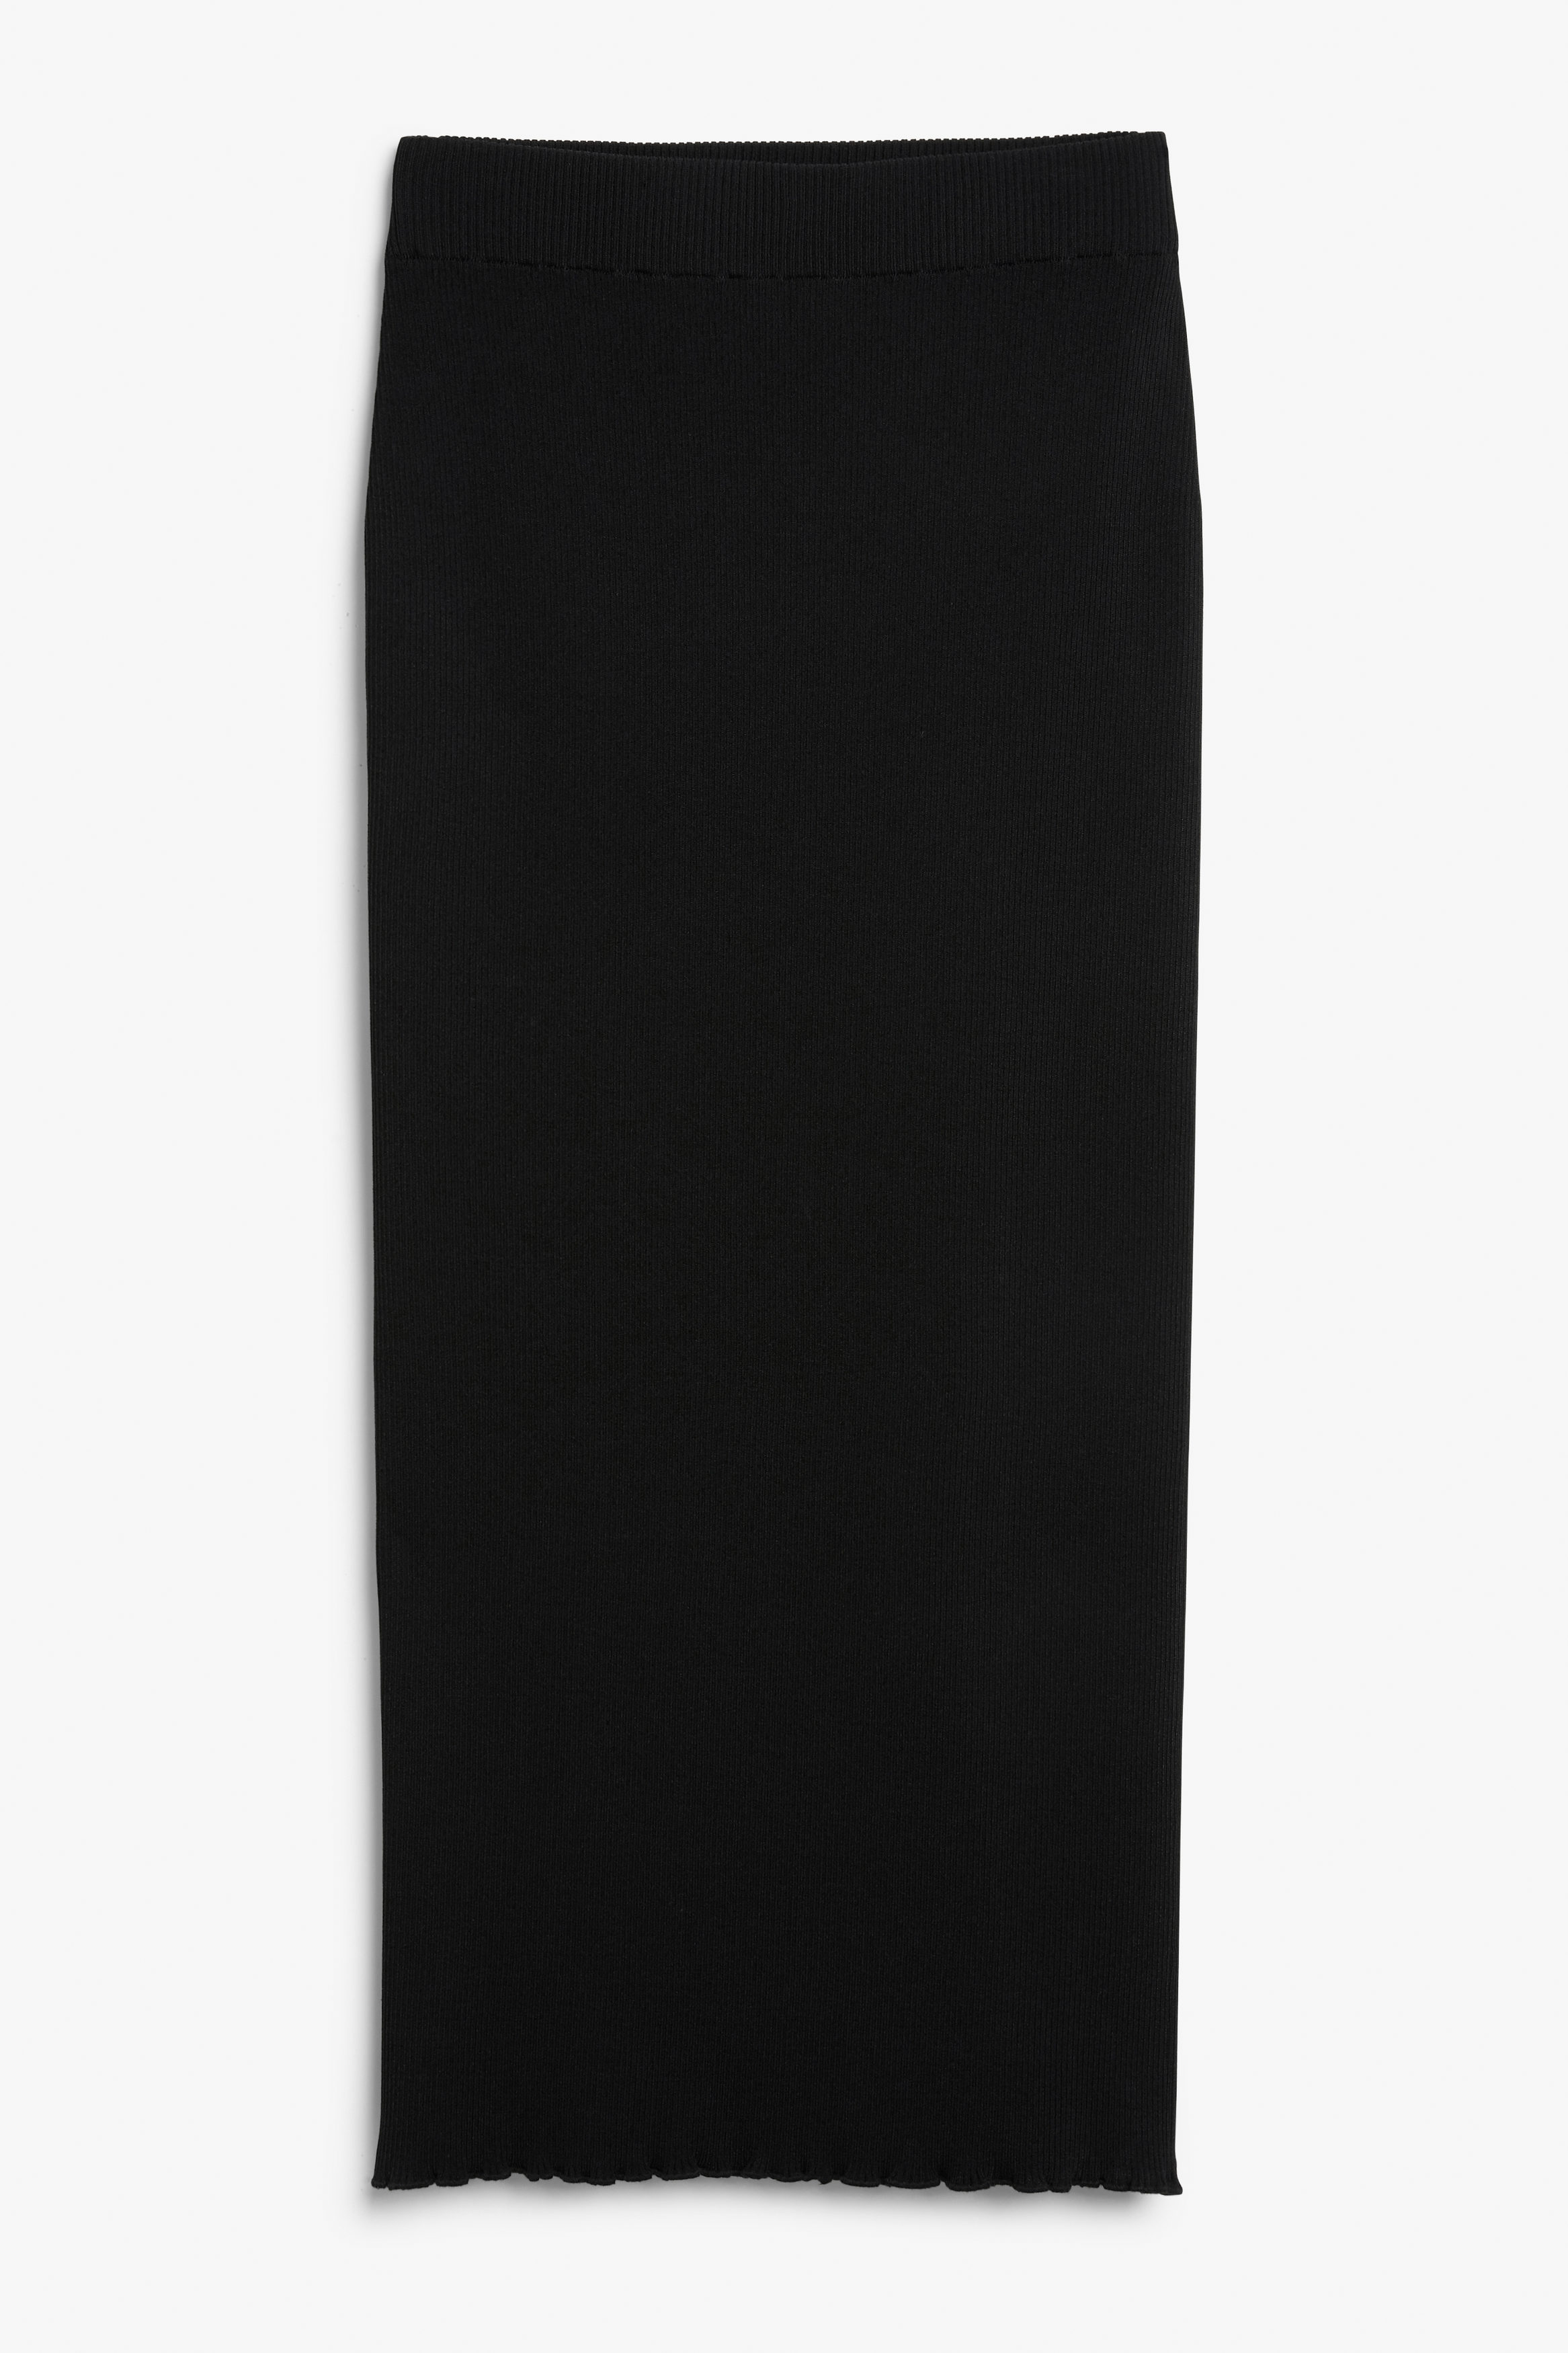 Billede af Monki Sort Nederdel I Rib Med Bølgekant, Nederdele. Farve: Black størrelse L